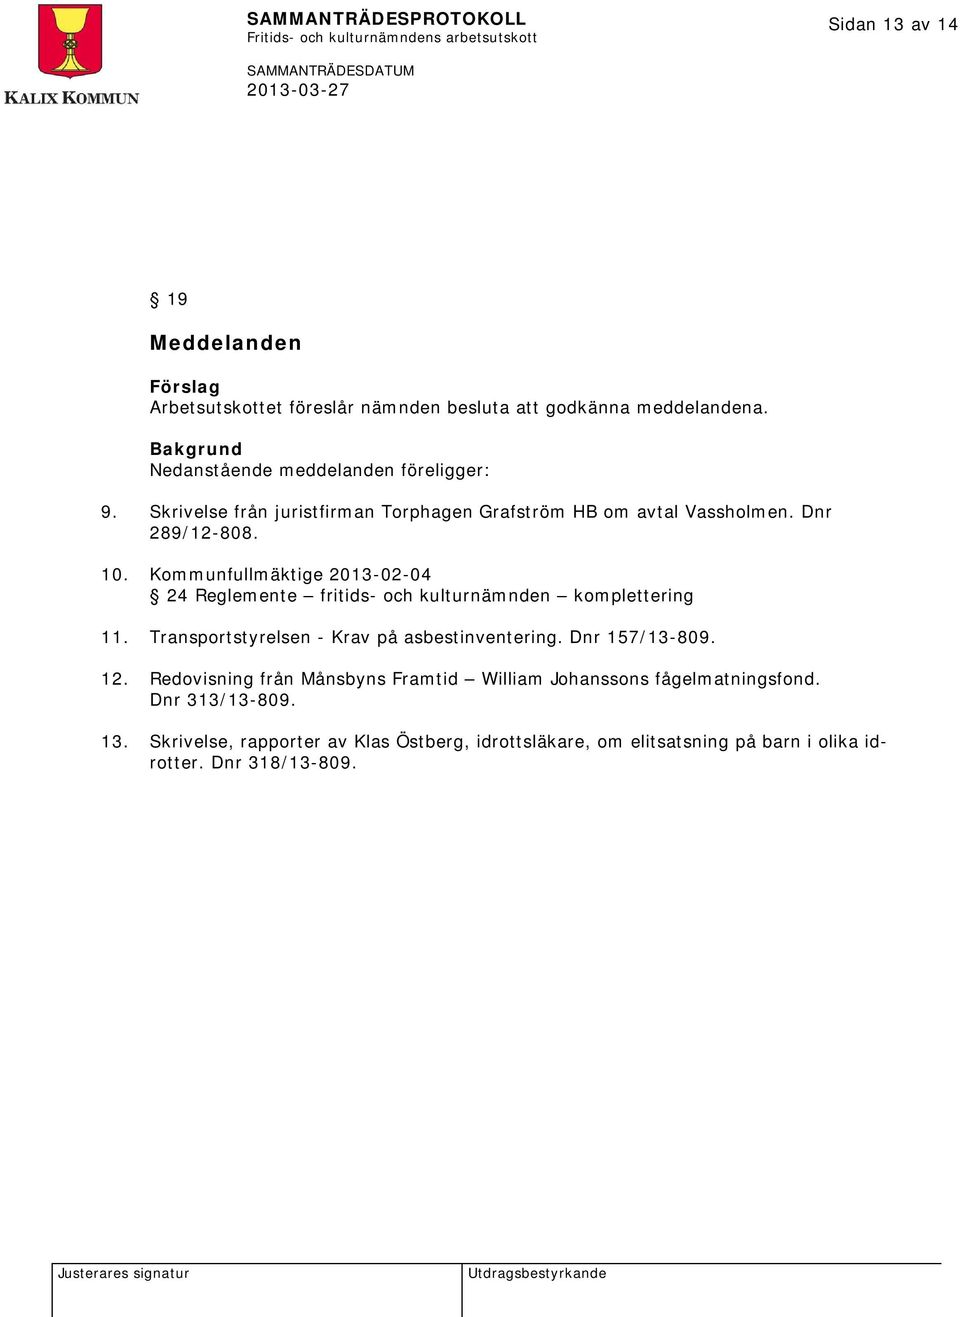 Kommunfullmäktige 2013-02-04 24 Reglemente fritids- och kulturnämnden komplettering 11. Transportstyrelsen - Krav på asbestinventering.